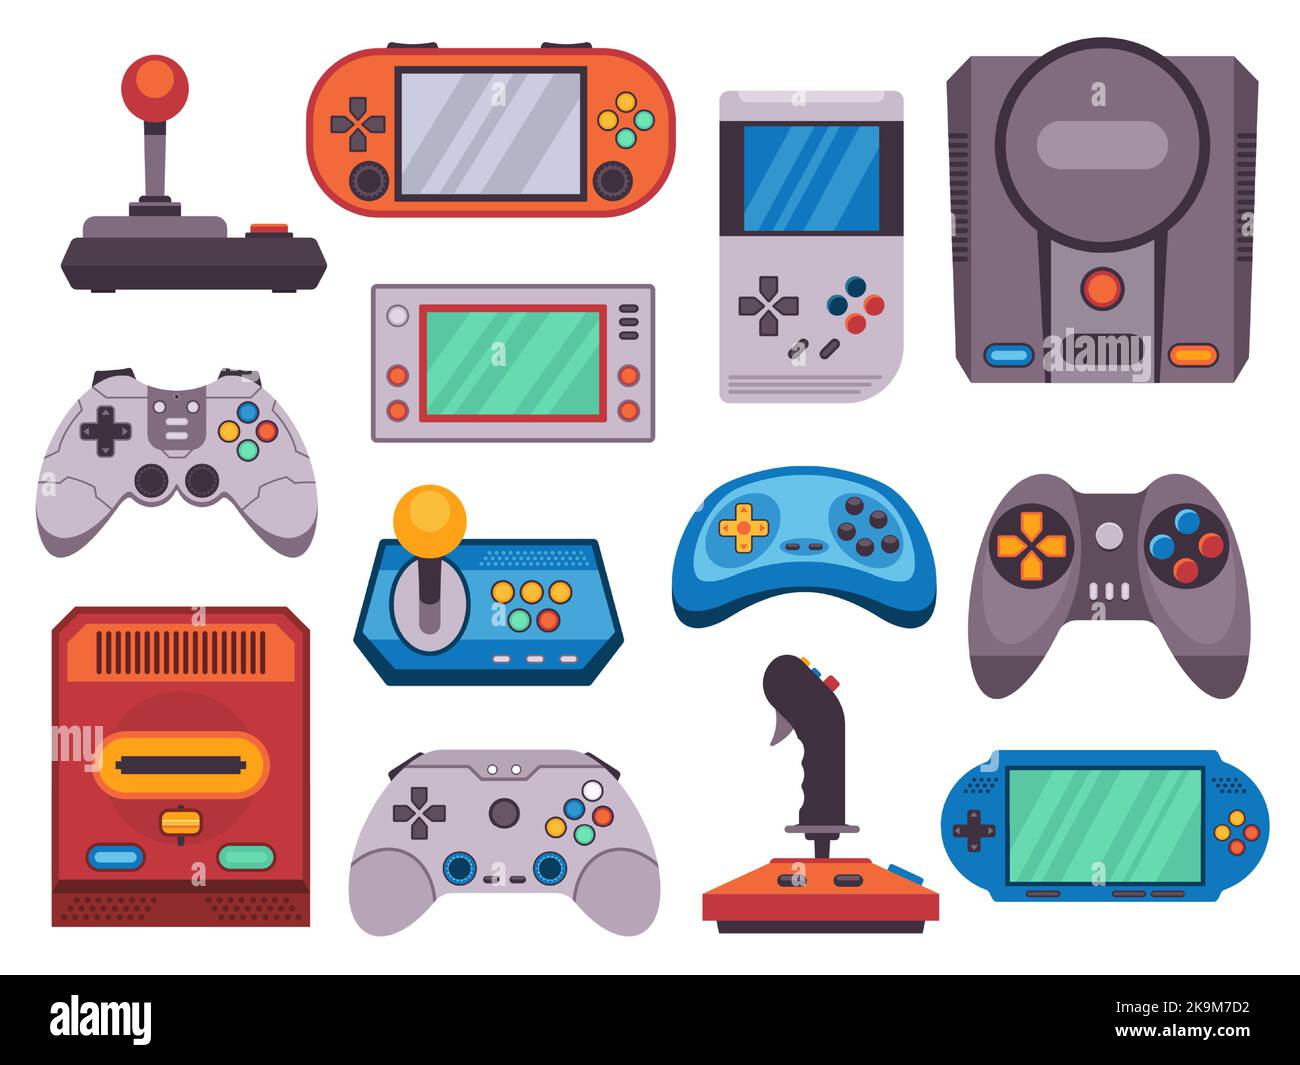 Videospielgeräte. Alte Retro-Joystick Gamepad flache Symbole, Cartoon Hipster klassische Gadget-Konsole für Gamer und pc-Geeks. Vektor-isolierte Sammlung Stock Vektor